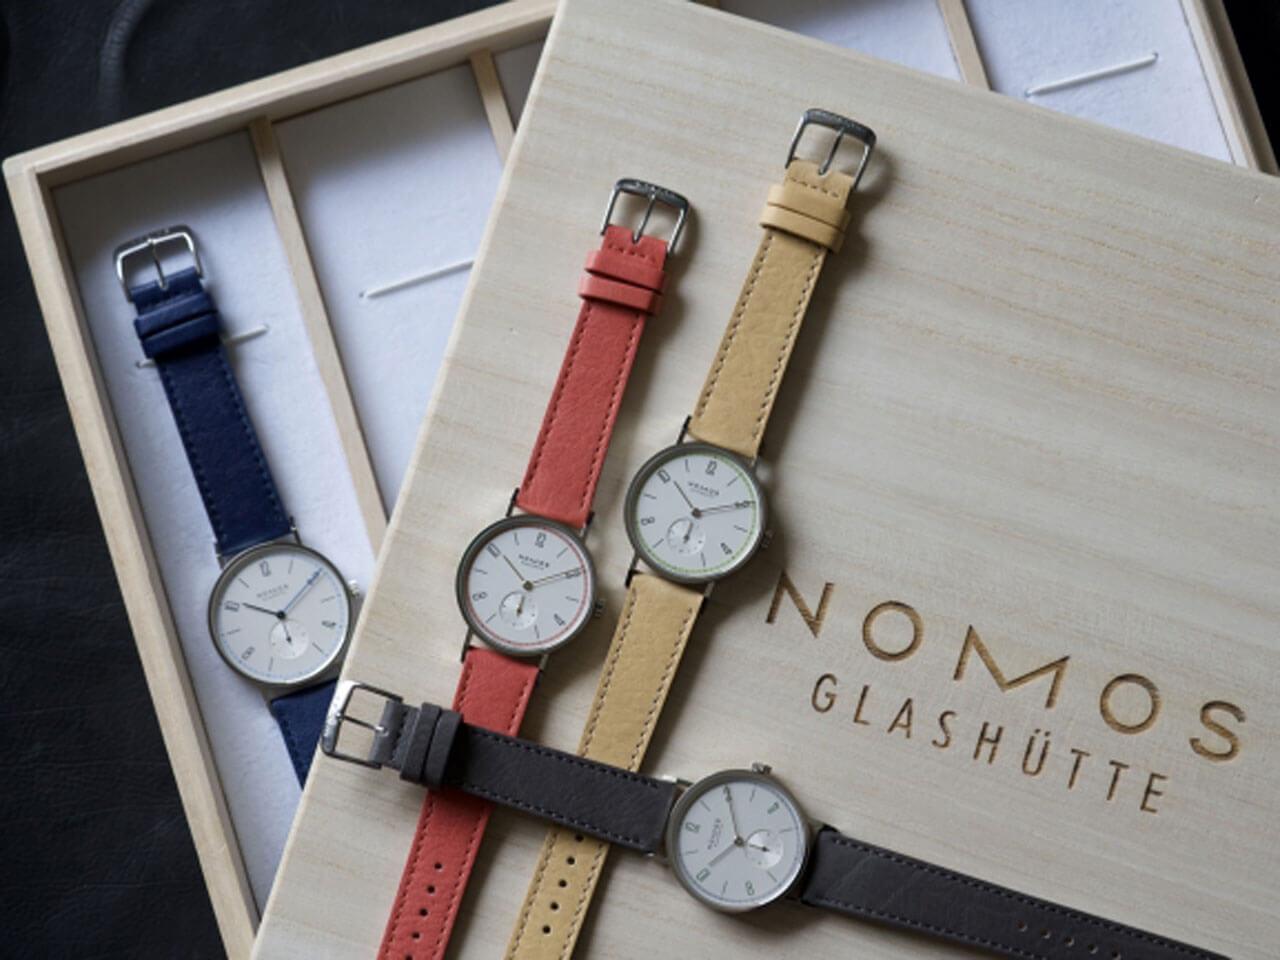 ノモス グラスヒュッテ日本限定モデル「Four Seasons」4 本セットの購入者には桐製のコレクションボックスを用意